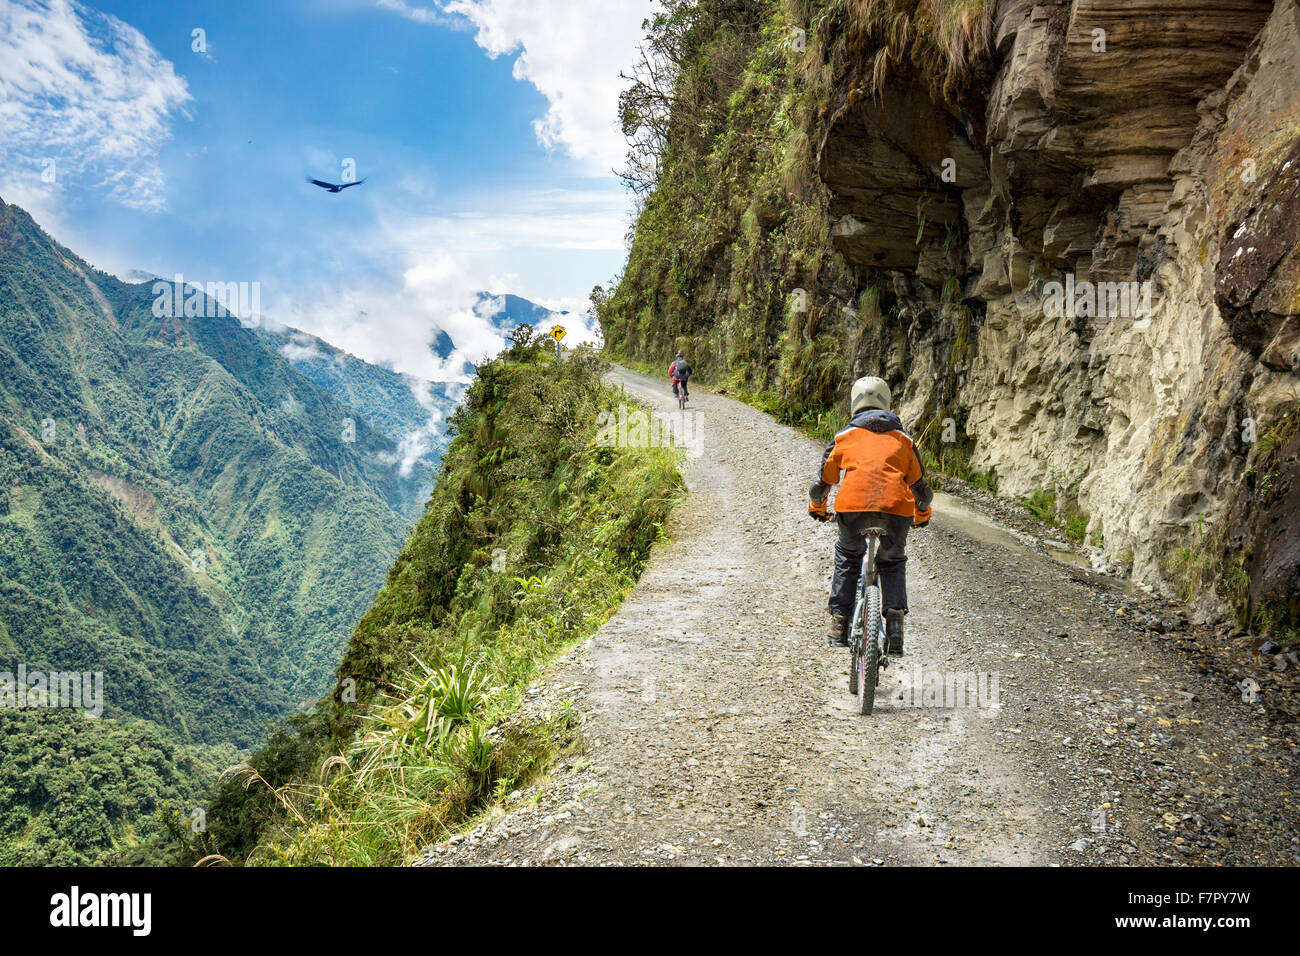 Motorrad Abenteuer Reisen Foto. Fahrrad-Touristen fahren auf der "Straße des Todes" downhill Strecke in Bolivien. Stockfoto